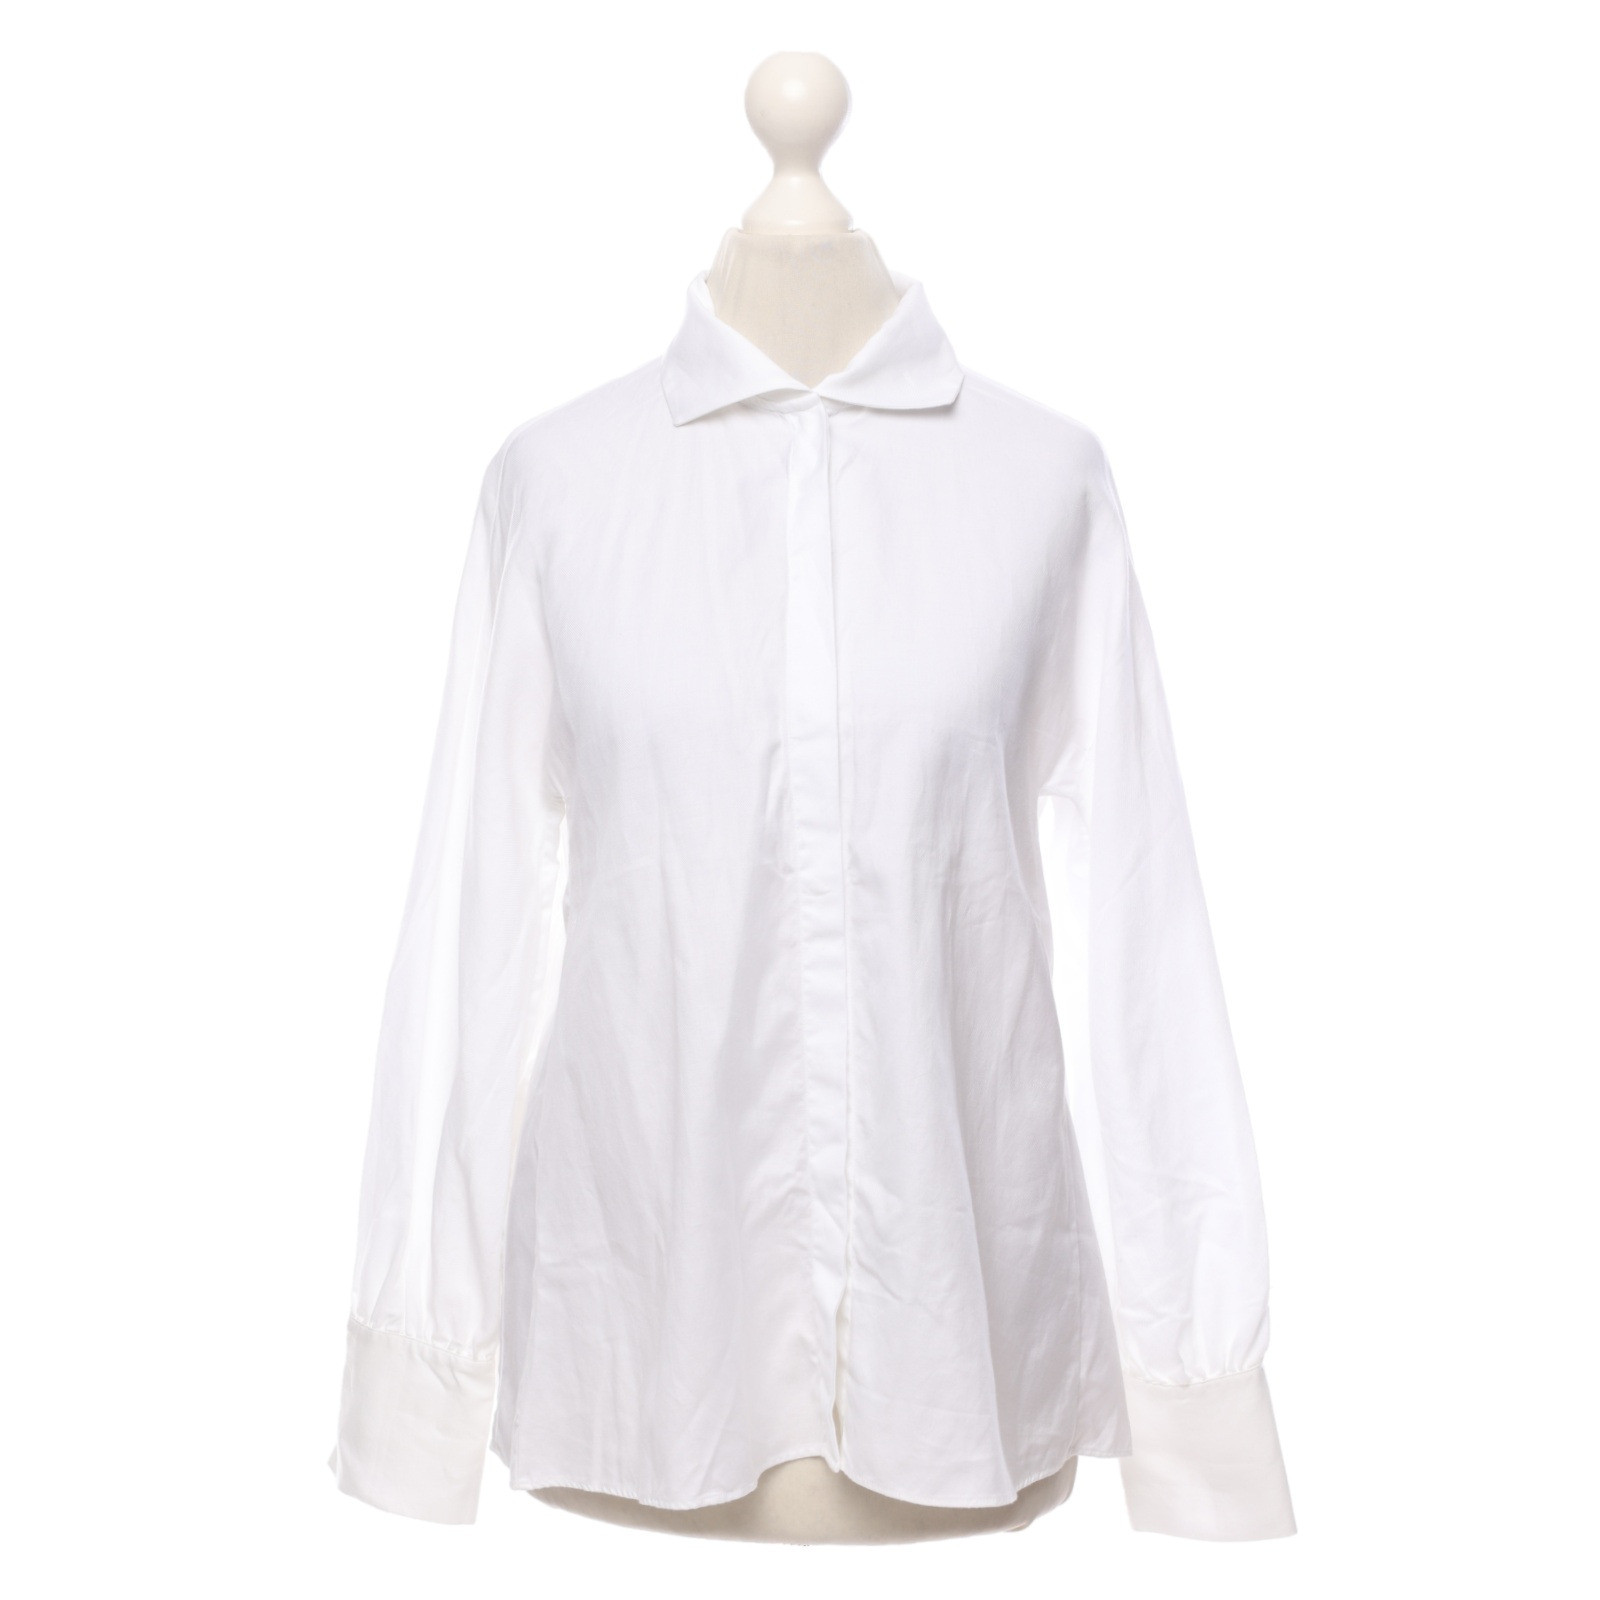 MASSIMO DUTTI Women's Top Cotton in White Size: DE 34